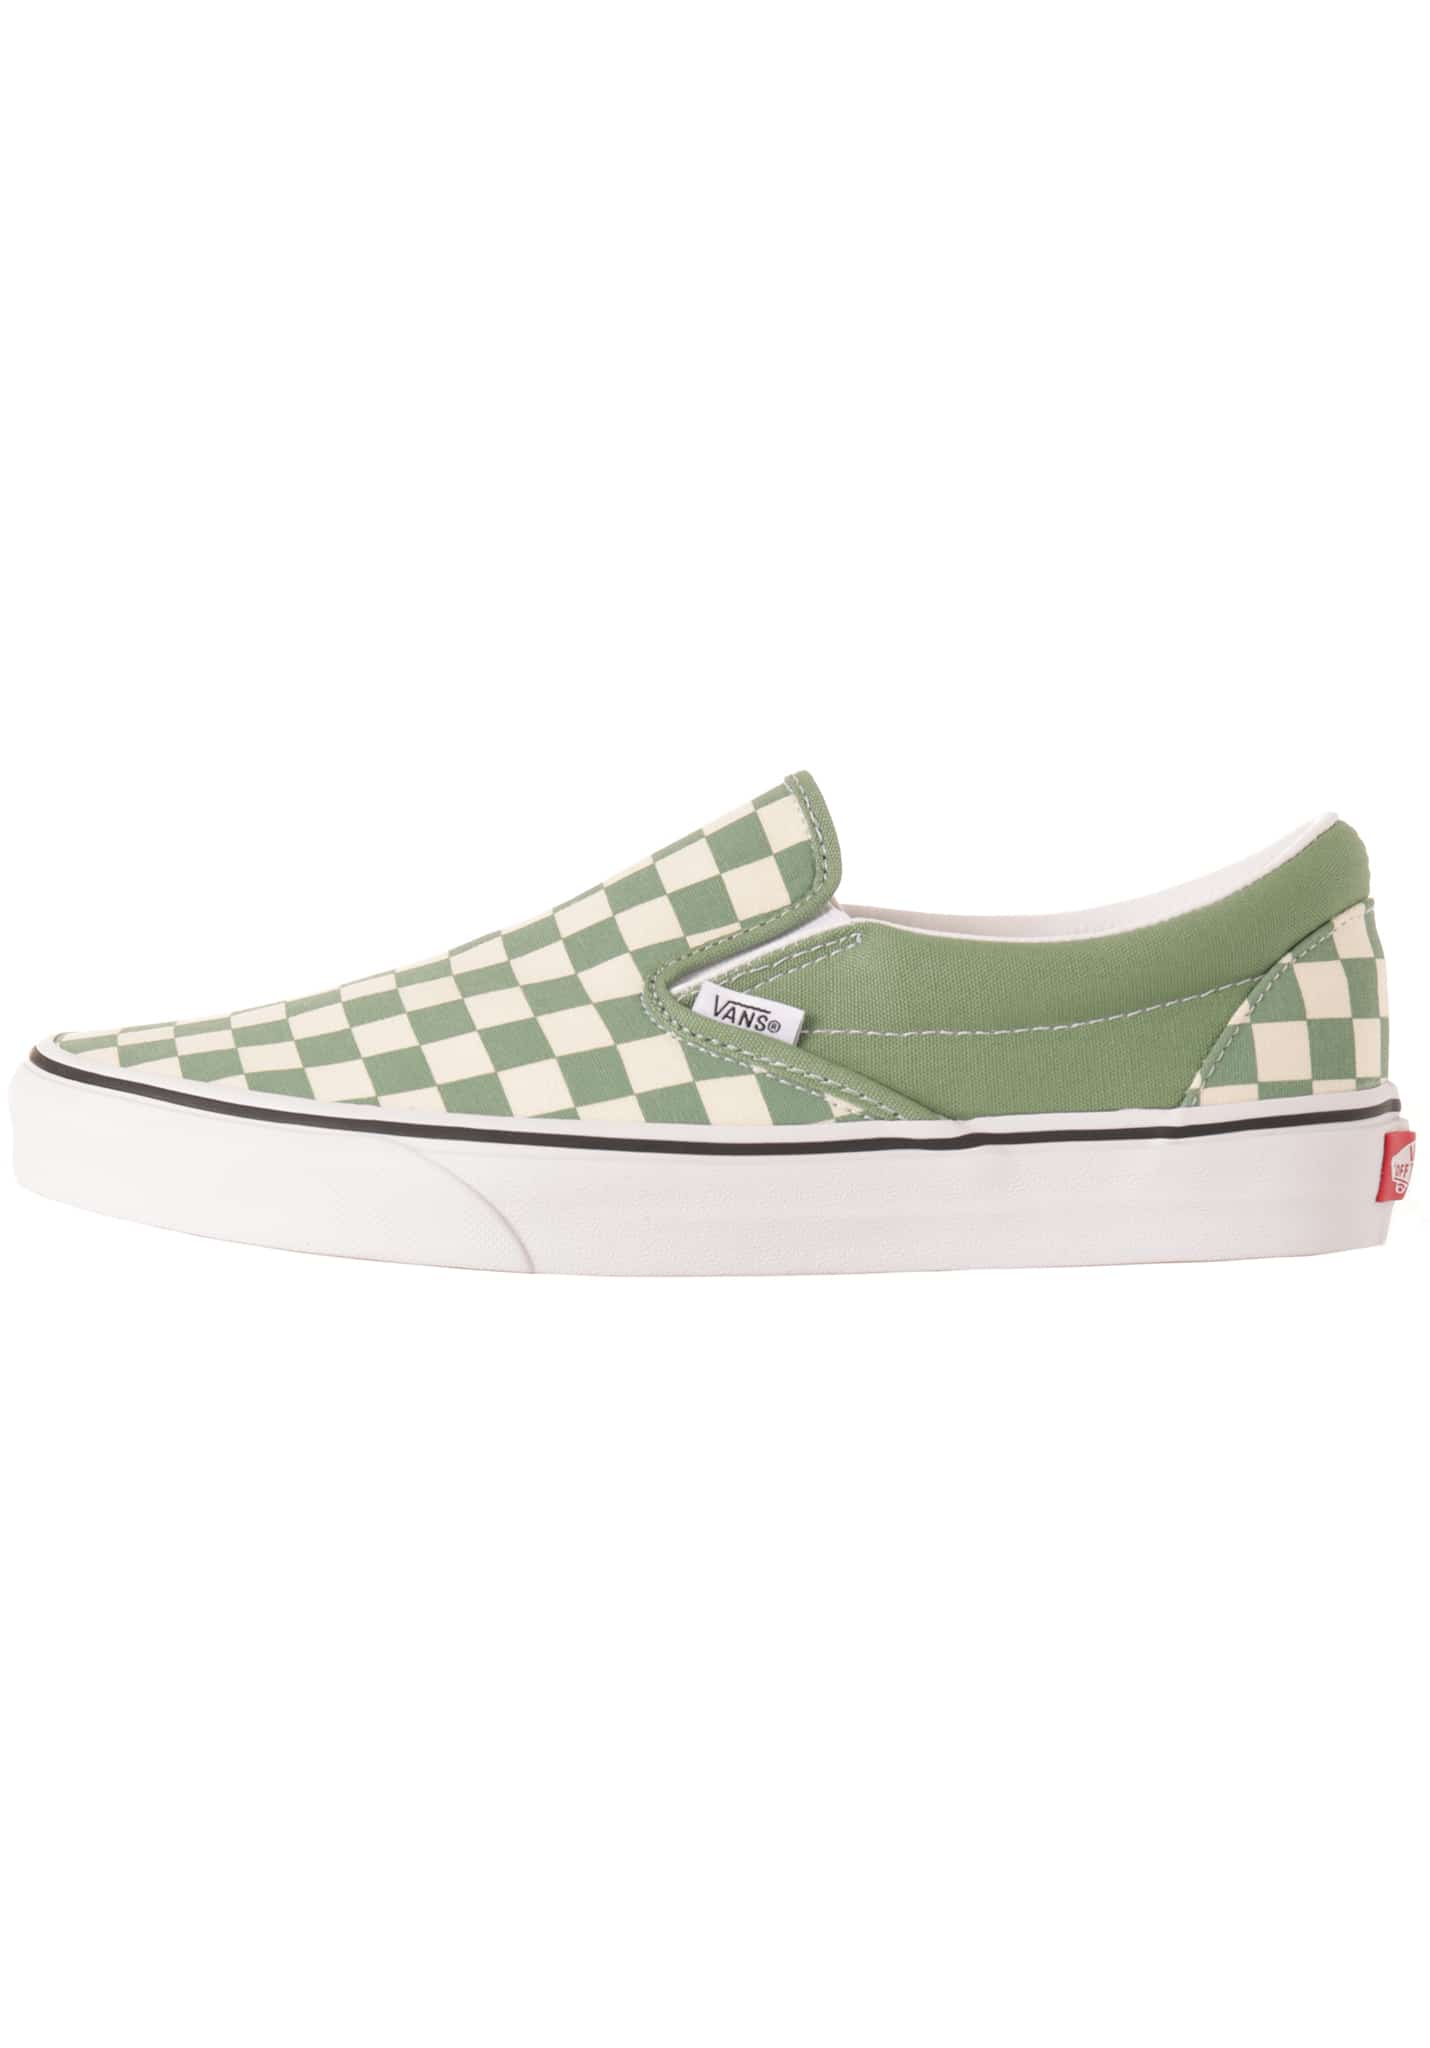 Vans Classic Slip-On Skateschuhe Low white - green 42